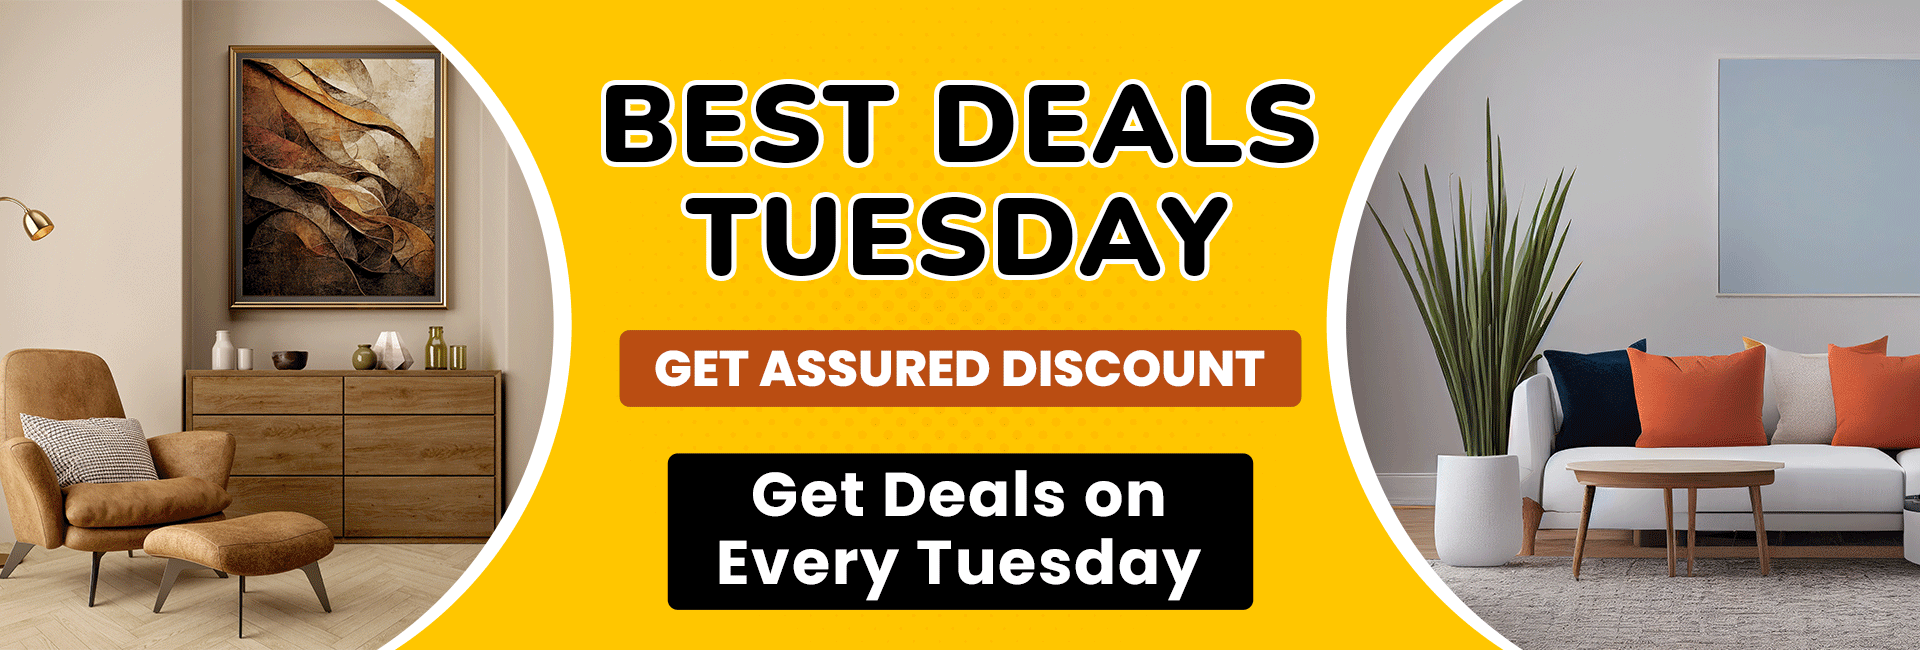 Best Deals Tuesday